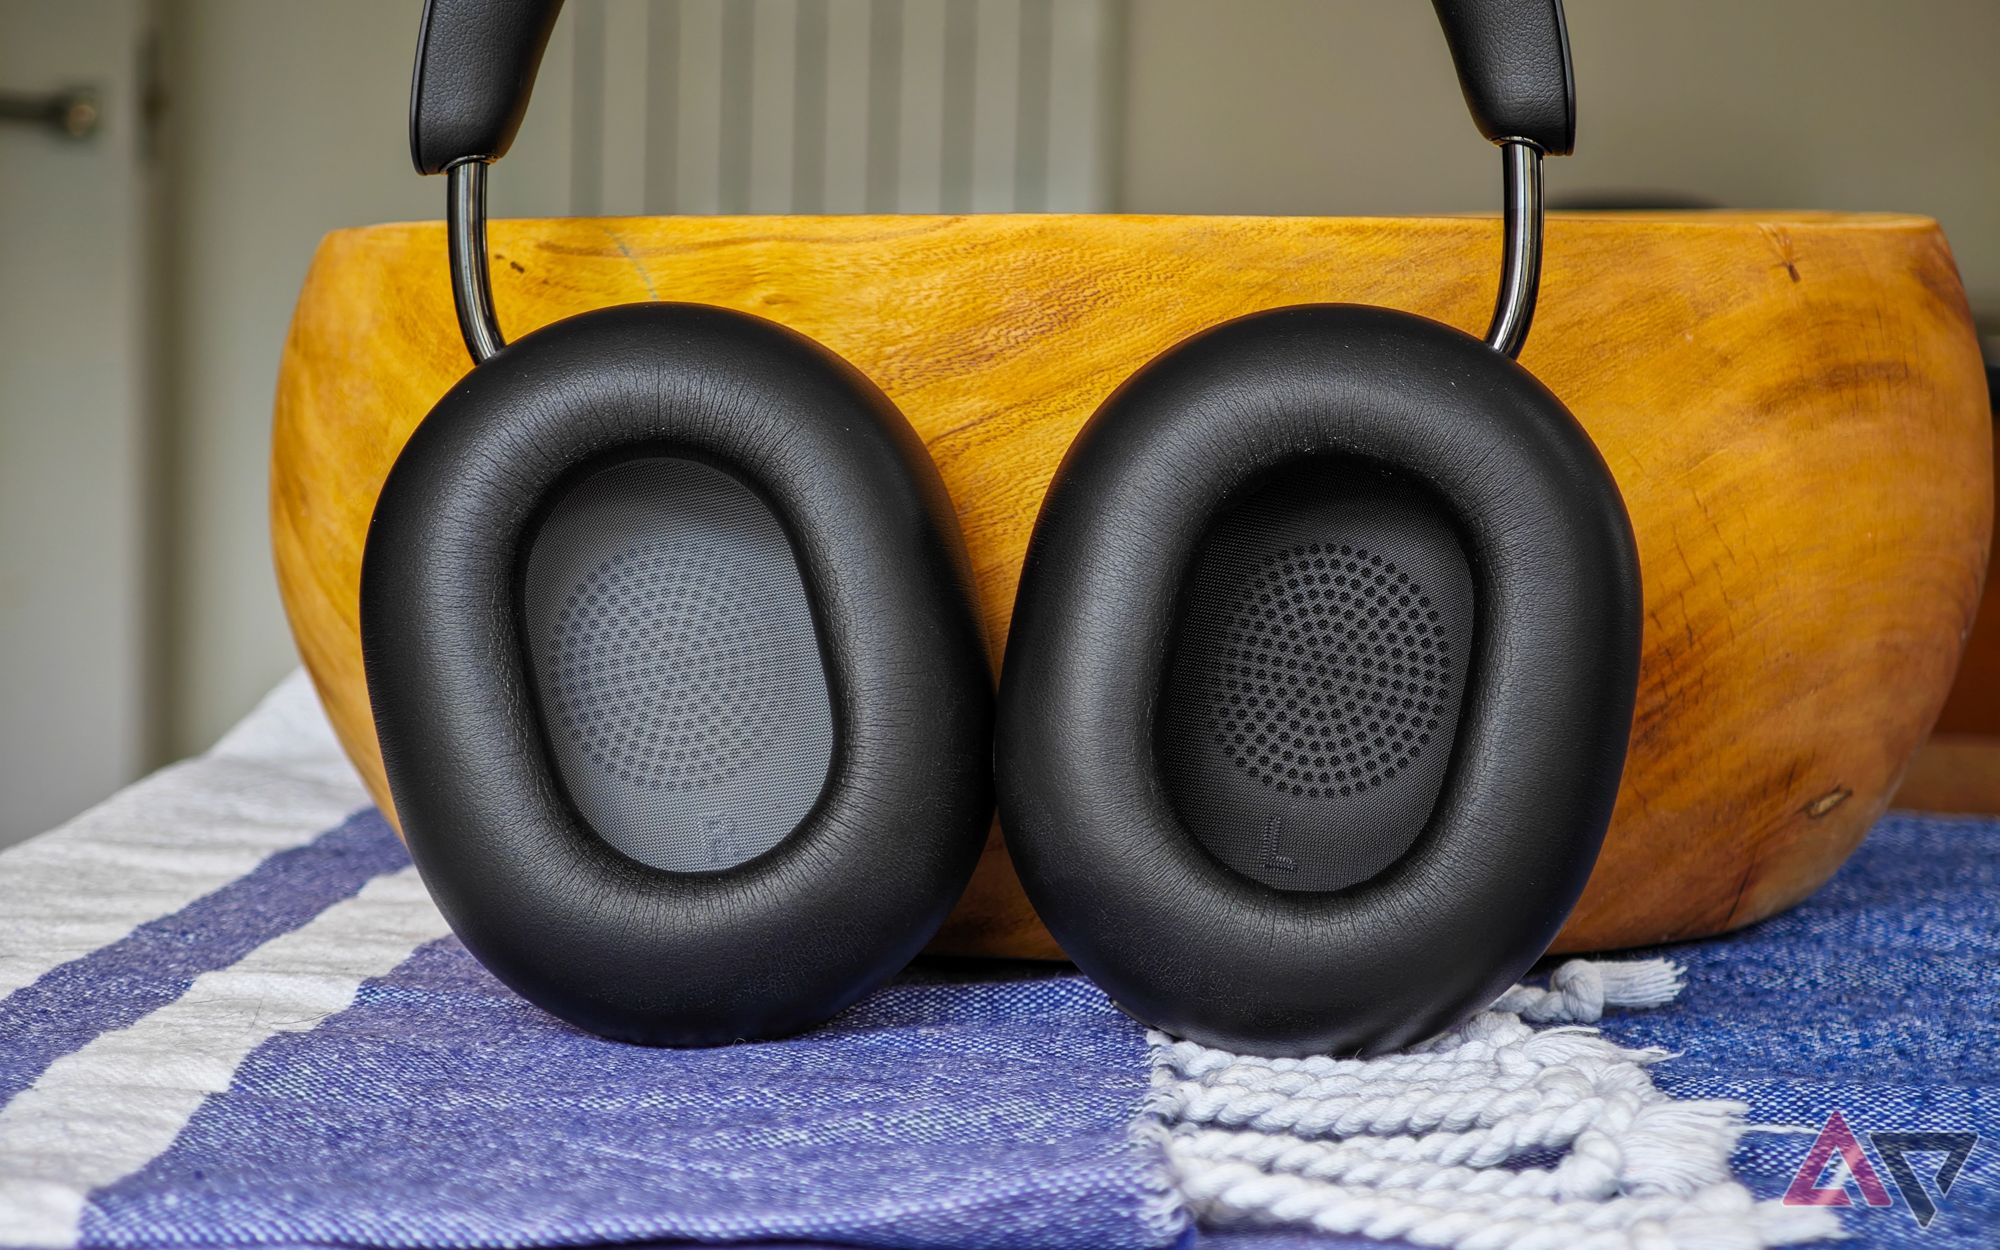 Fones de ouvido Sonos Ace em pé sobre uma mesa, encostados em uma tigela de madeira, com os protetores auriculares internos voltados para a câmera